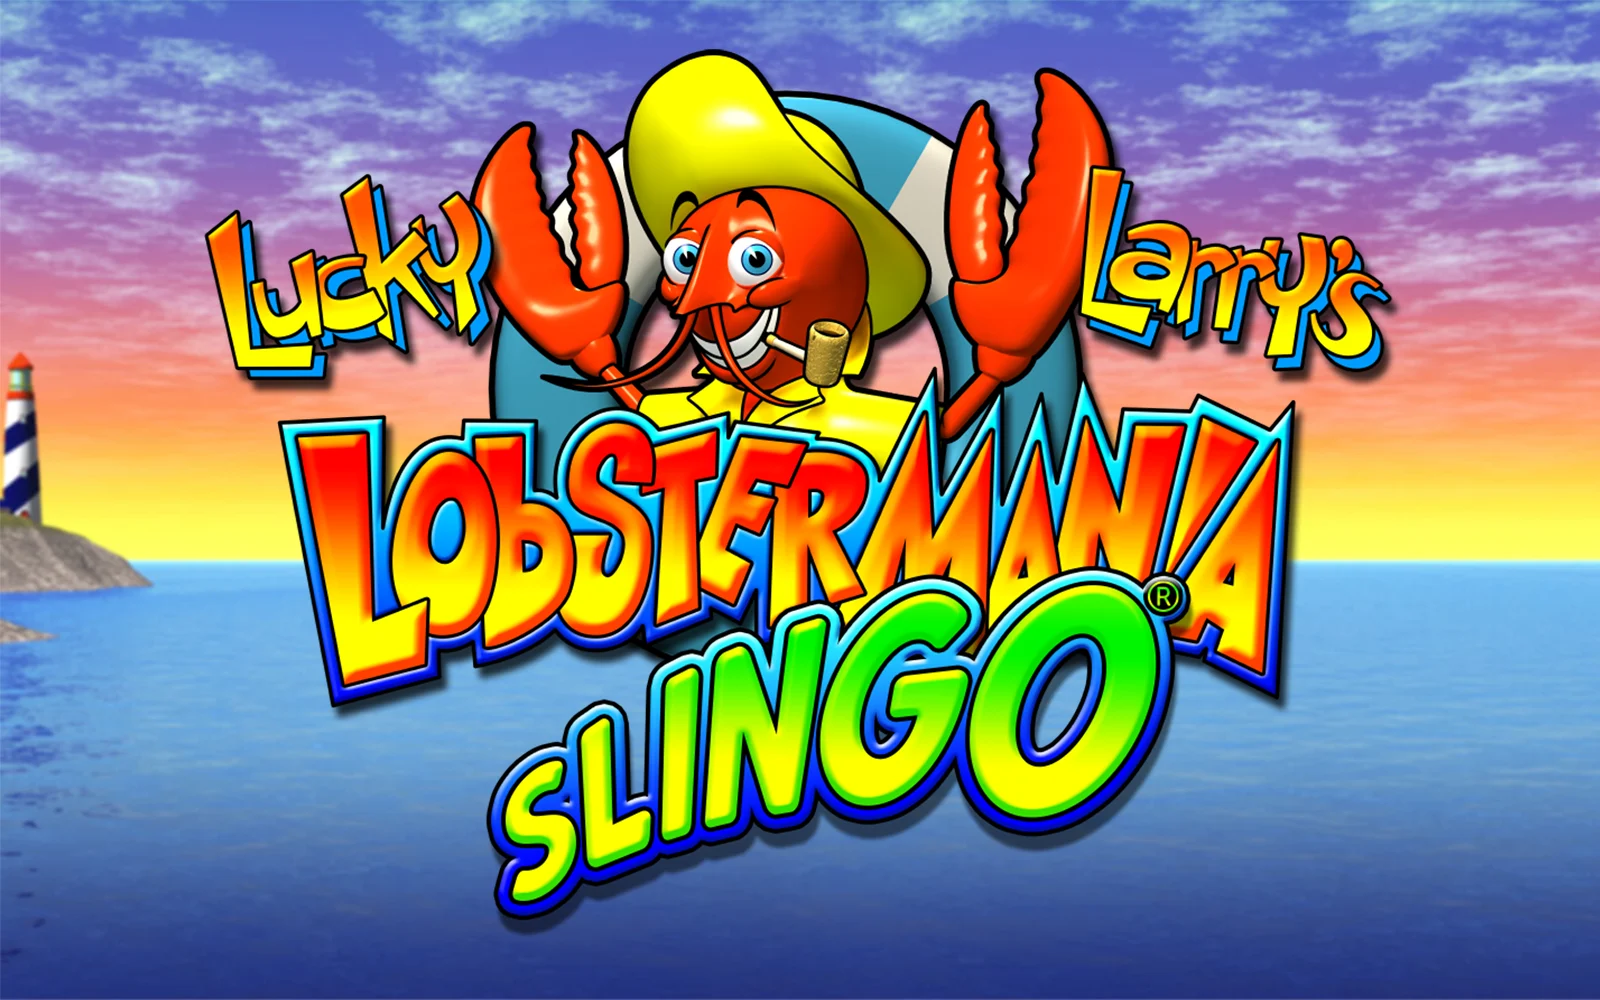 Spielen Sie Lucky Larry's Lobstermania Slingo auf Starcasino.be-Online-Casino